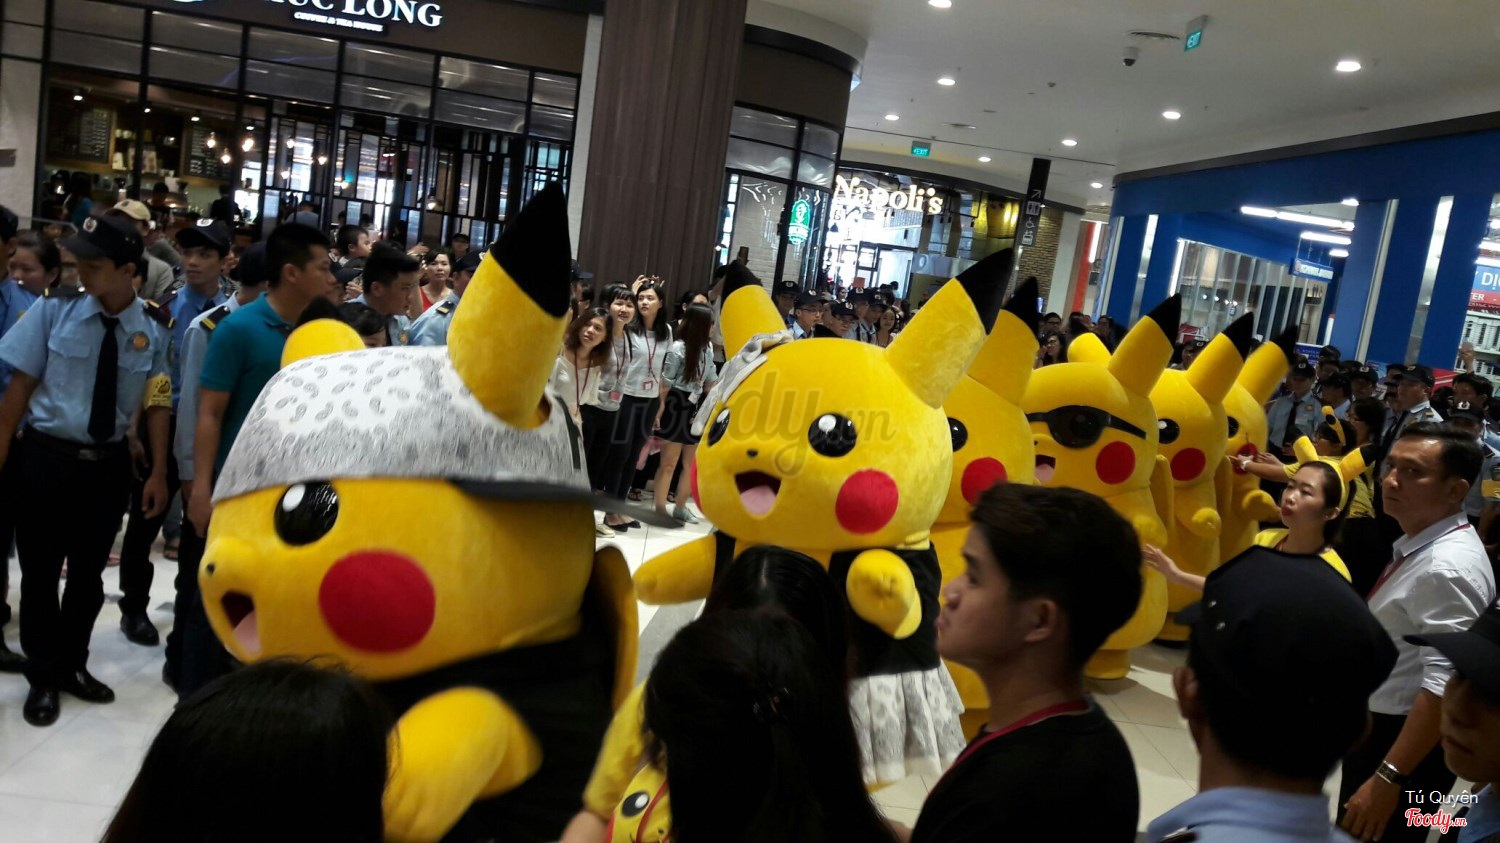 Binh đoàn Pikachu Aeon Mall Bình Tân